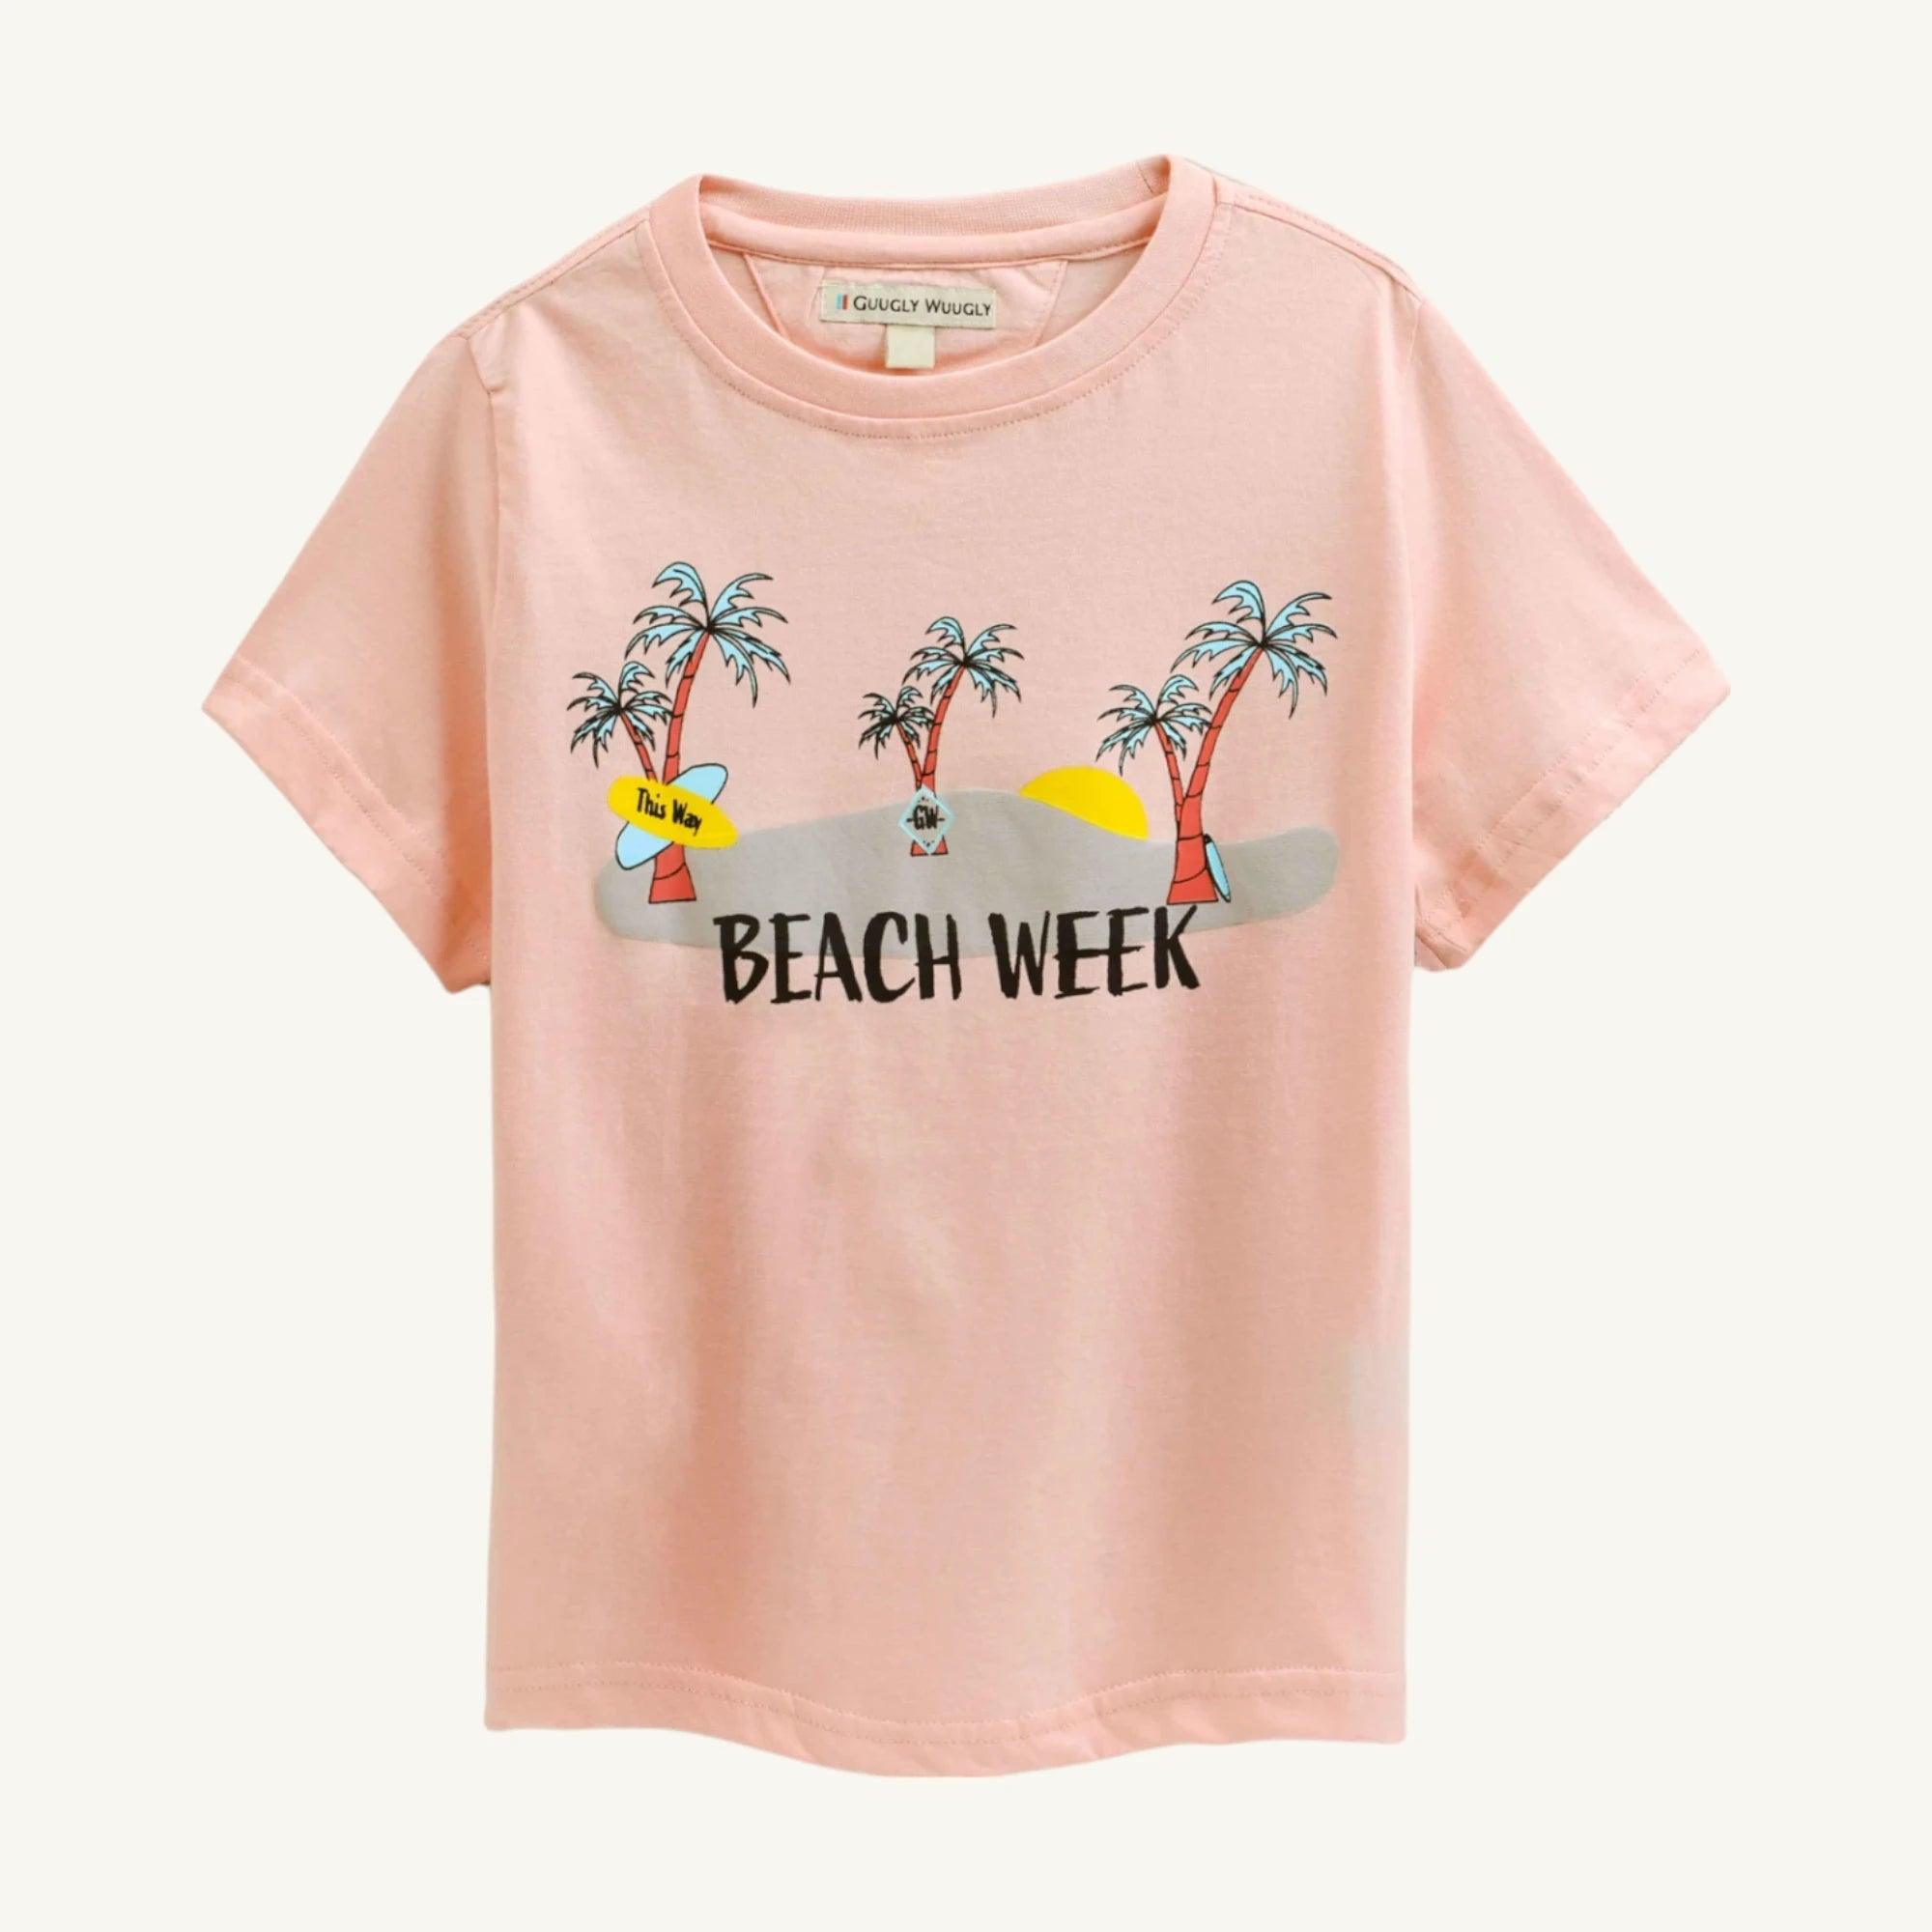 Girls Beach Week T-shirt - Guugly Wuugly